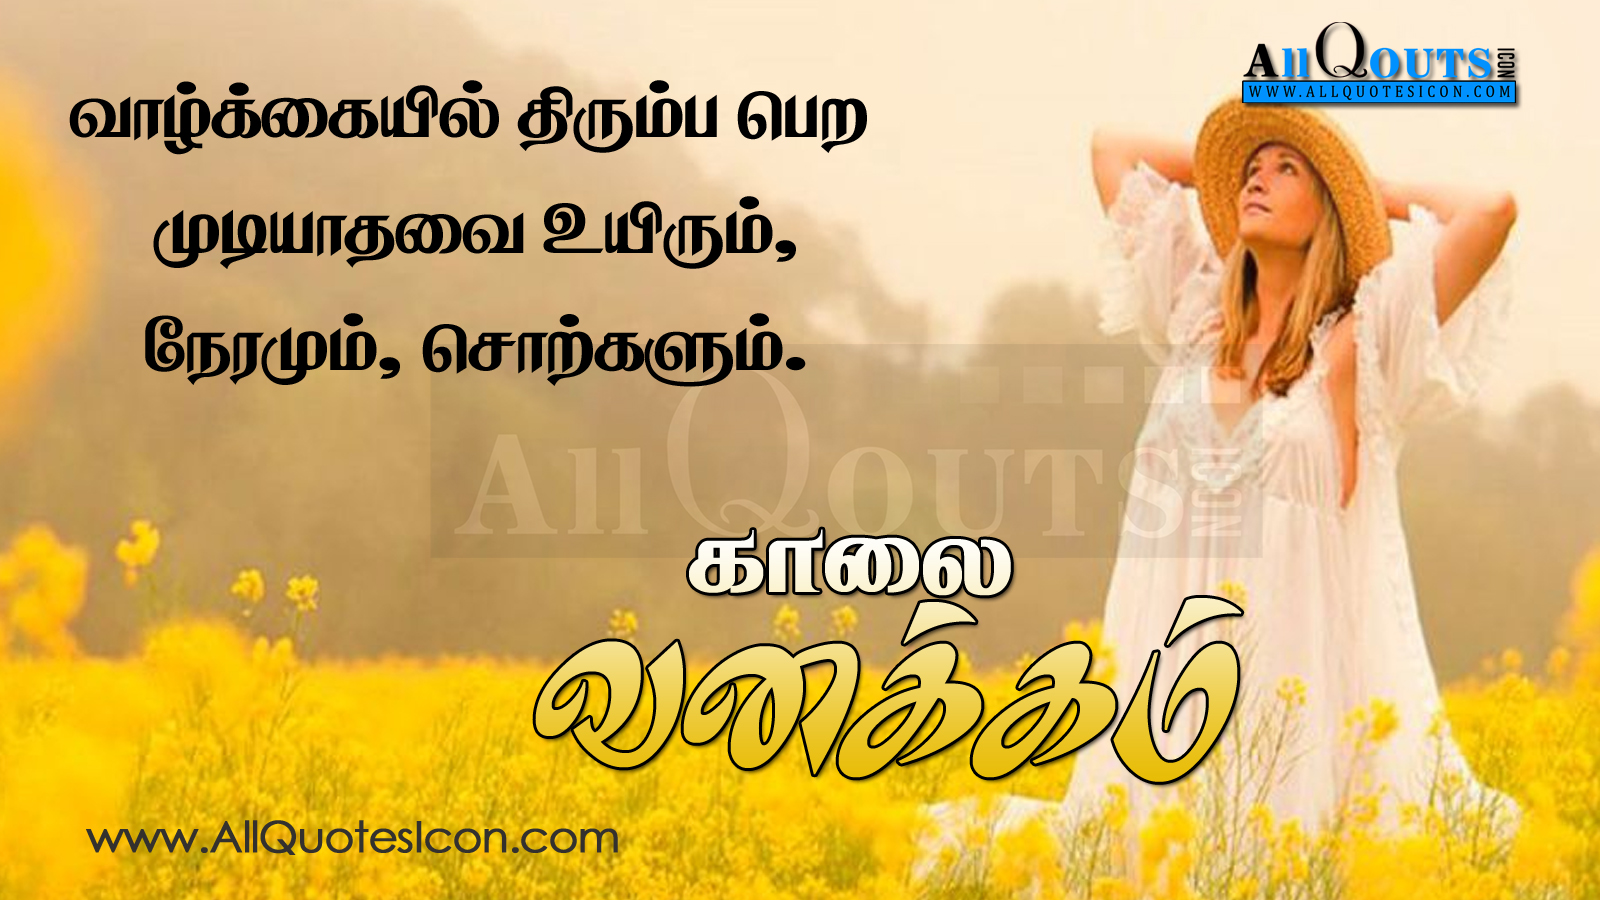 AllQuotesIcon Telugu Quotes Tamil Quotes Hindi Quotes English Quotes